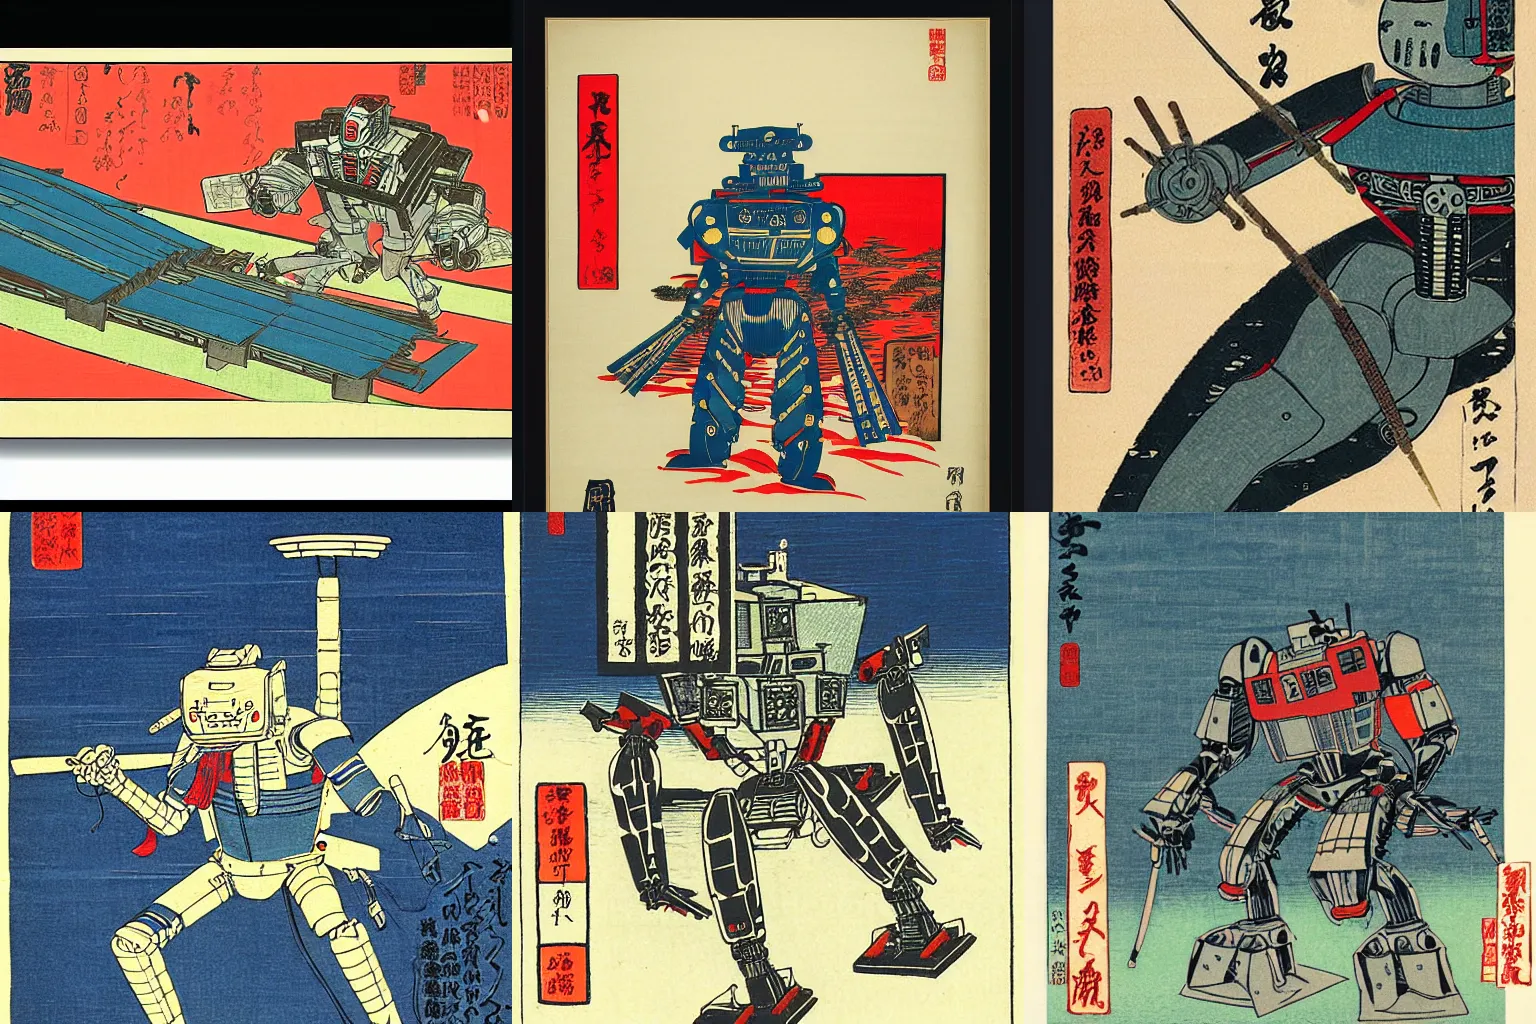 Prompt: Combat model robot, woodblock print by Hiroshige